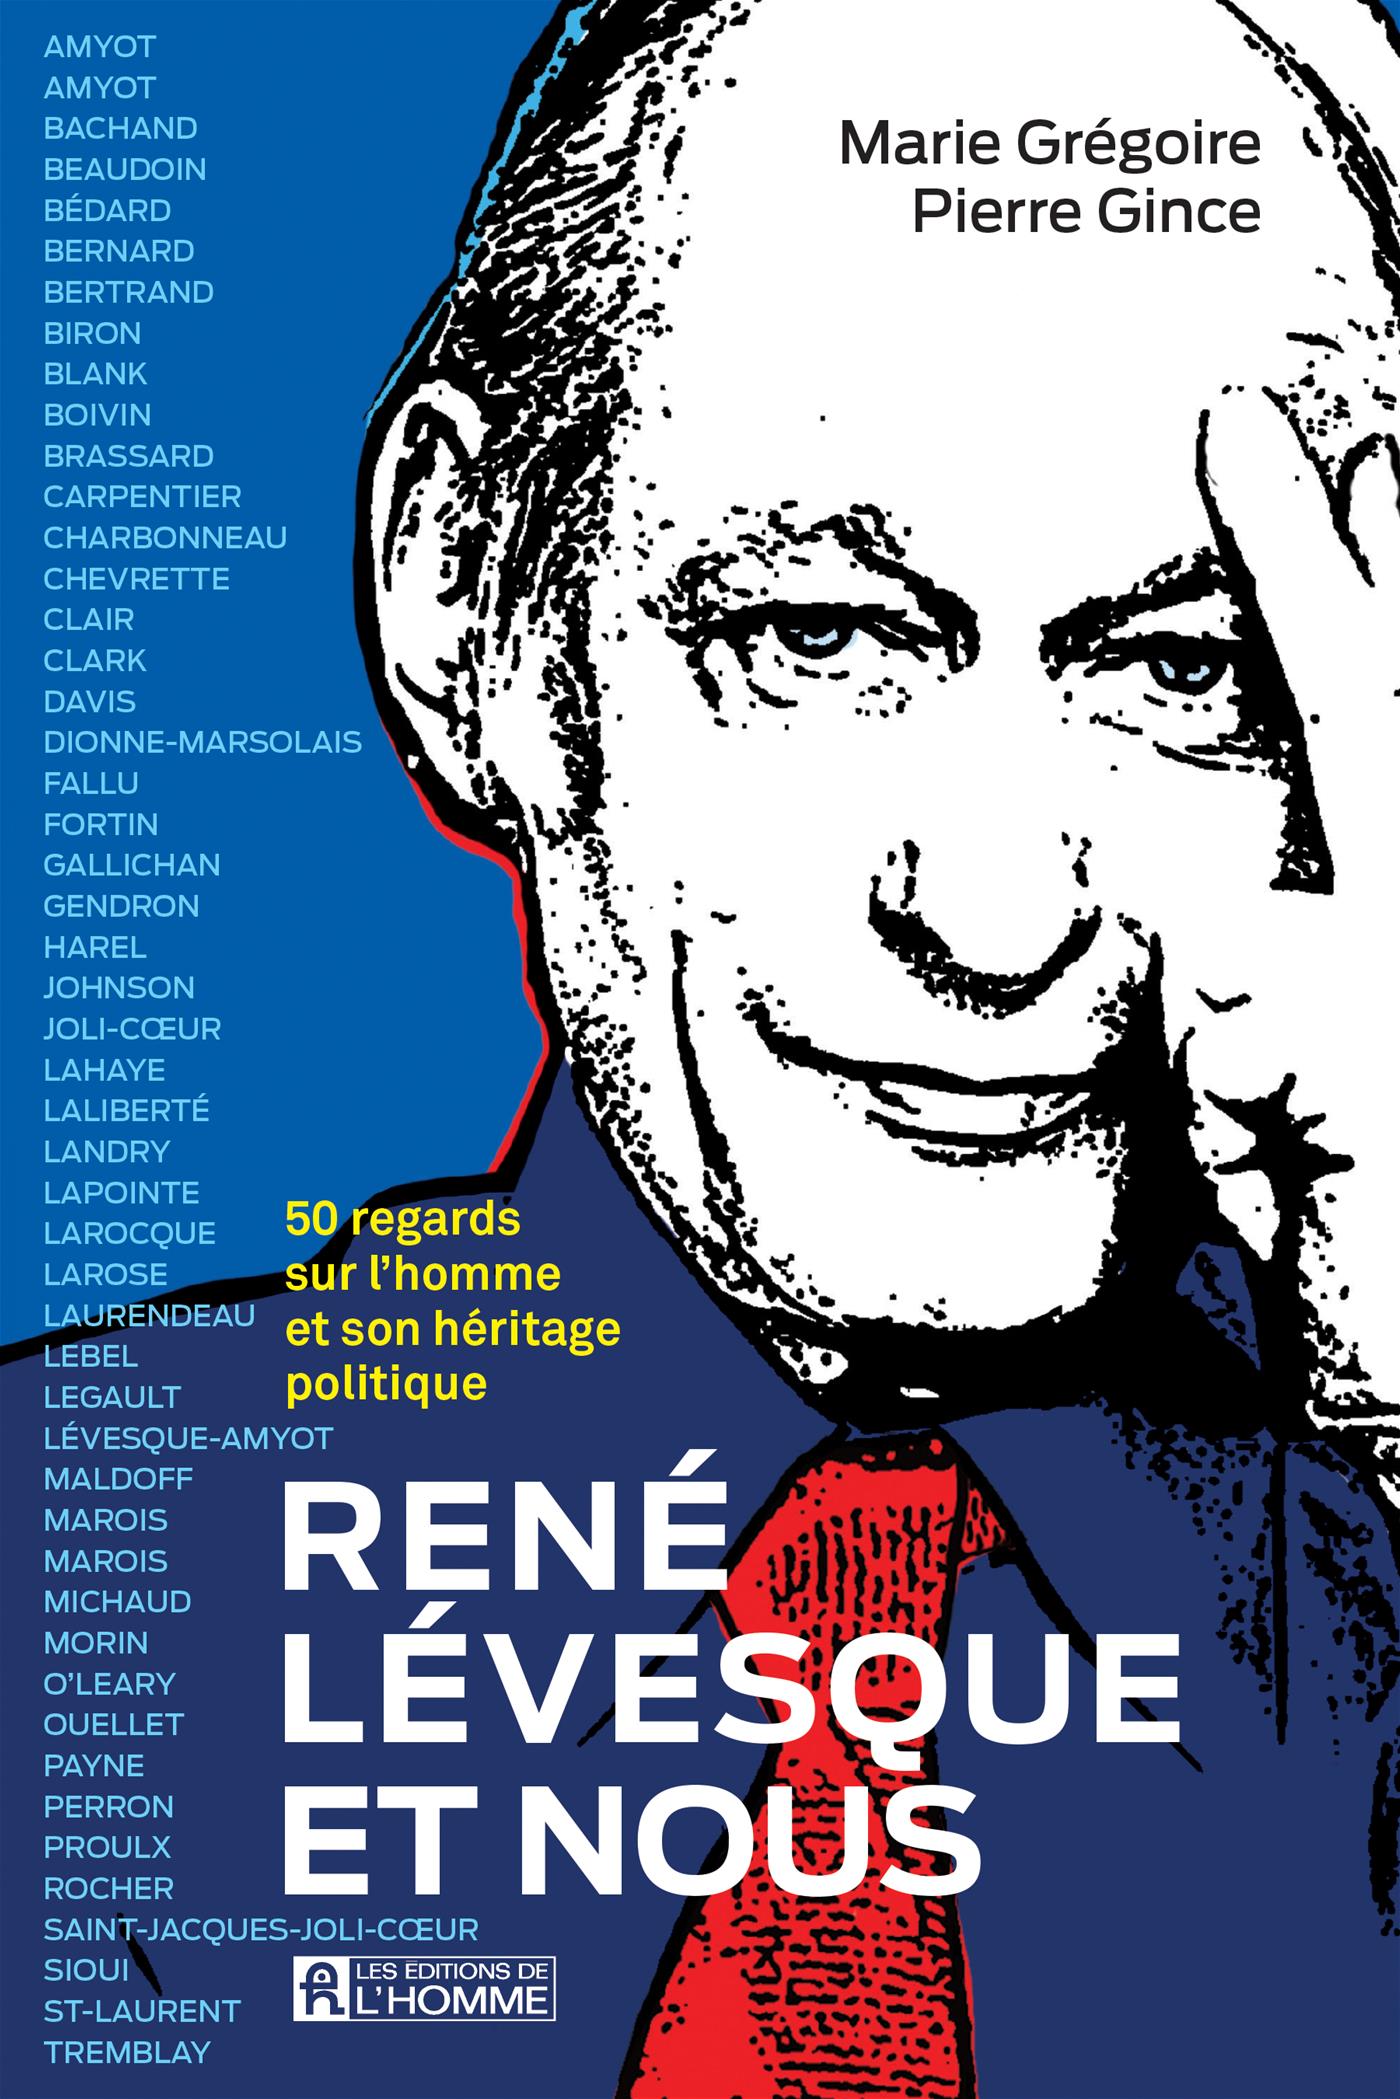 René Lévesque et nous : 50 regards sur l'homme et son héritage politique, de Marie Grégoire et Pierre Gince